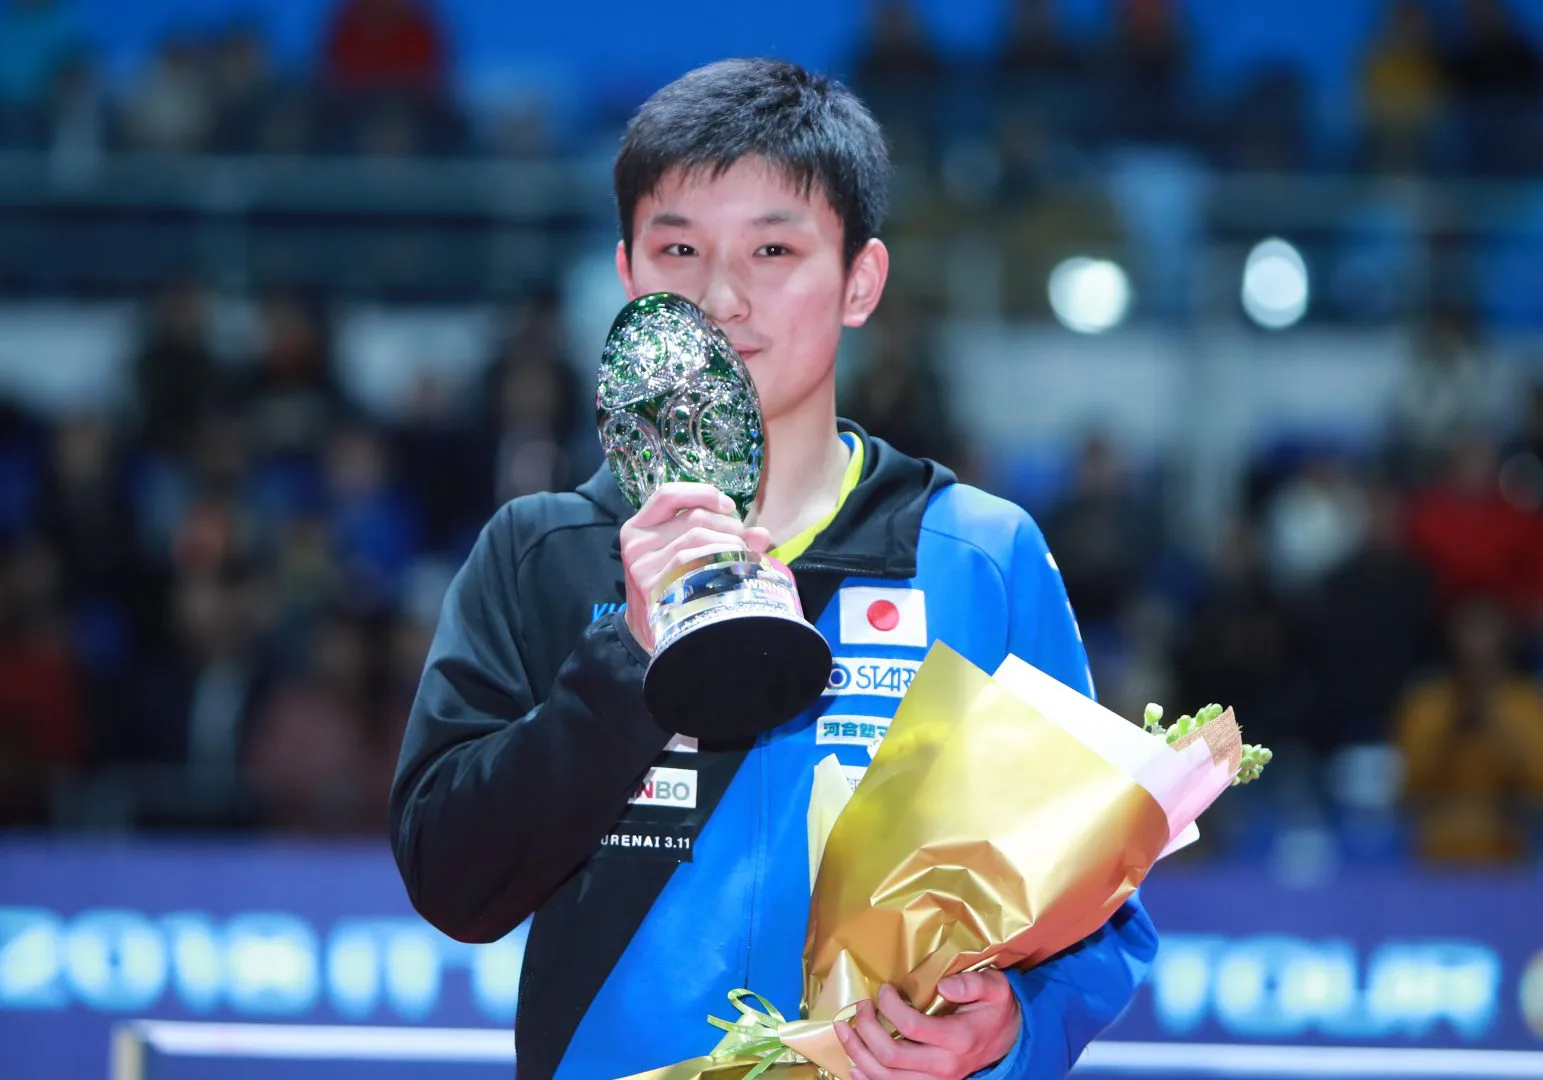 卓球界 過去世界ランキング1位の日本人選手は バドでは奥原希望が1位の快挙 卓球メディア Rallys ラリーズ